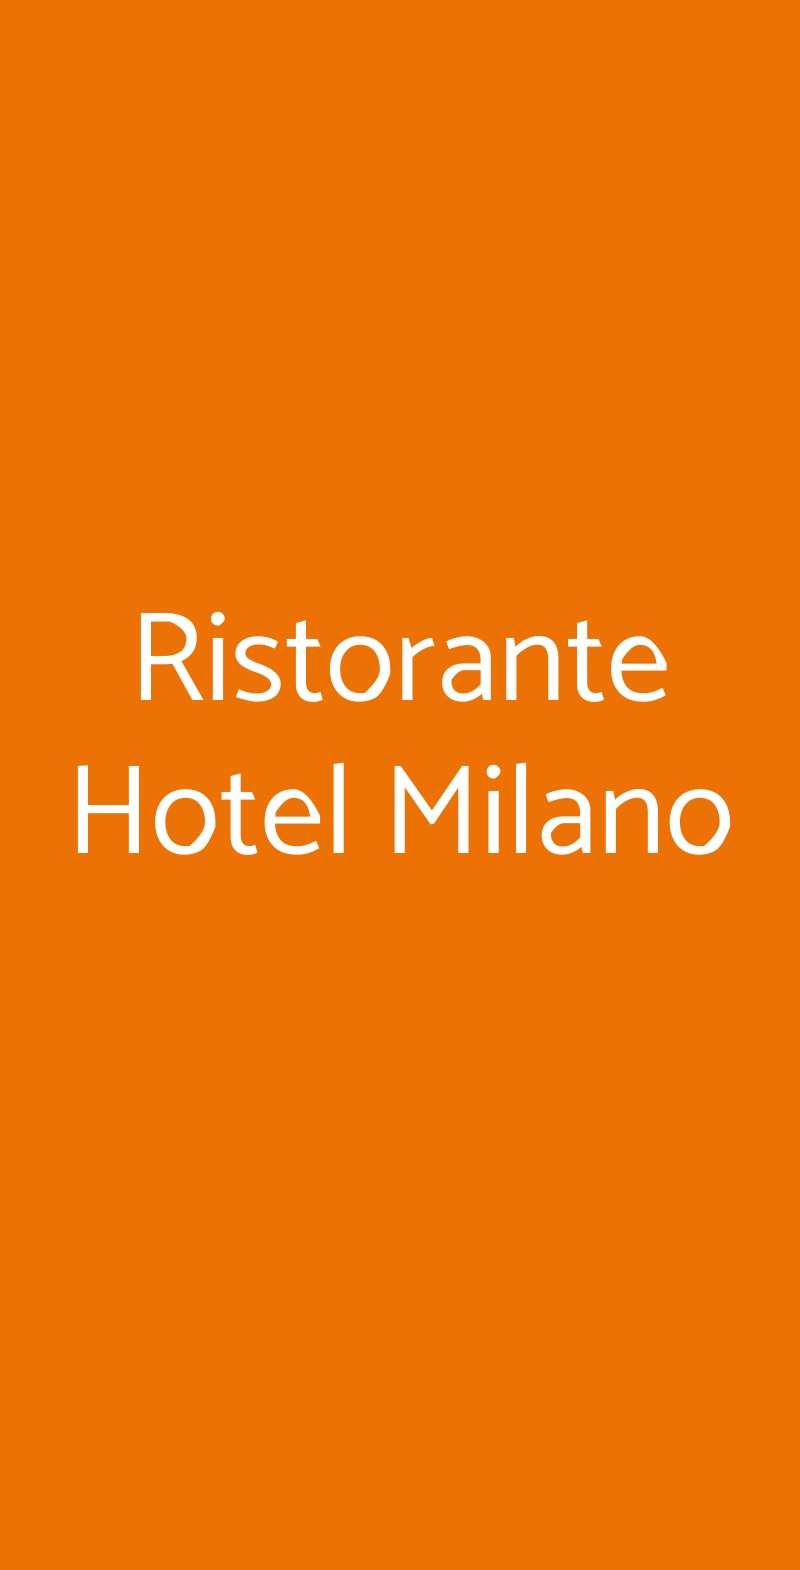 Ristorante Hotel Milano Piazzatorre menù 1 pagina